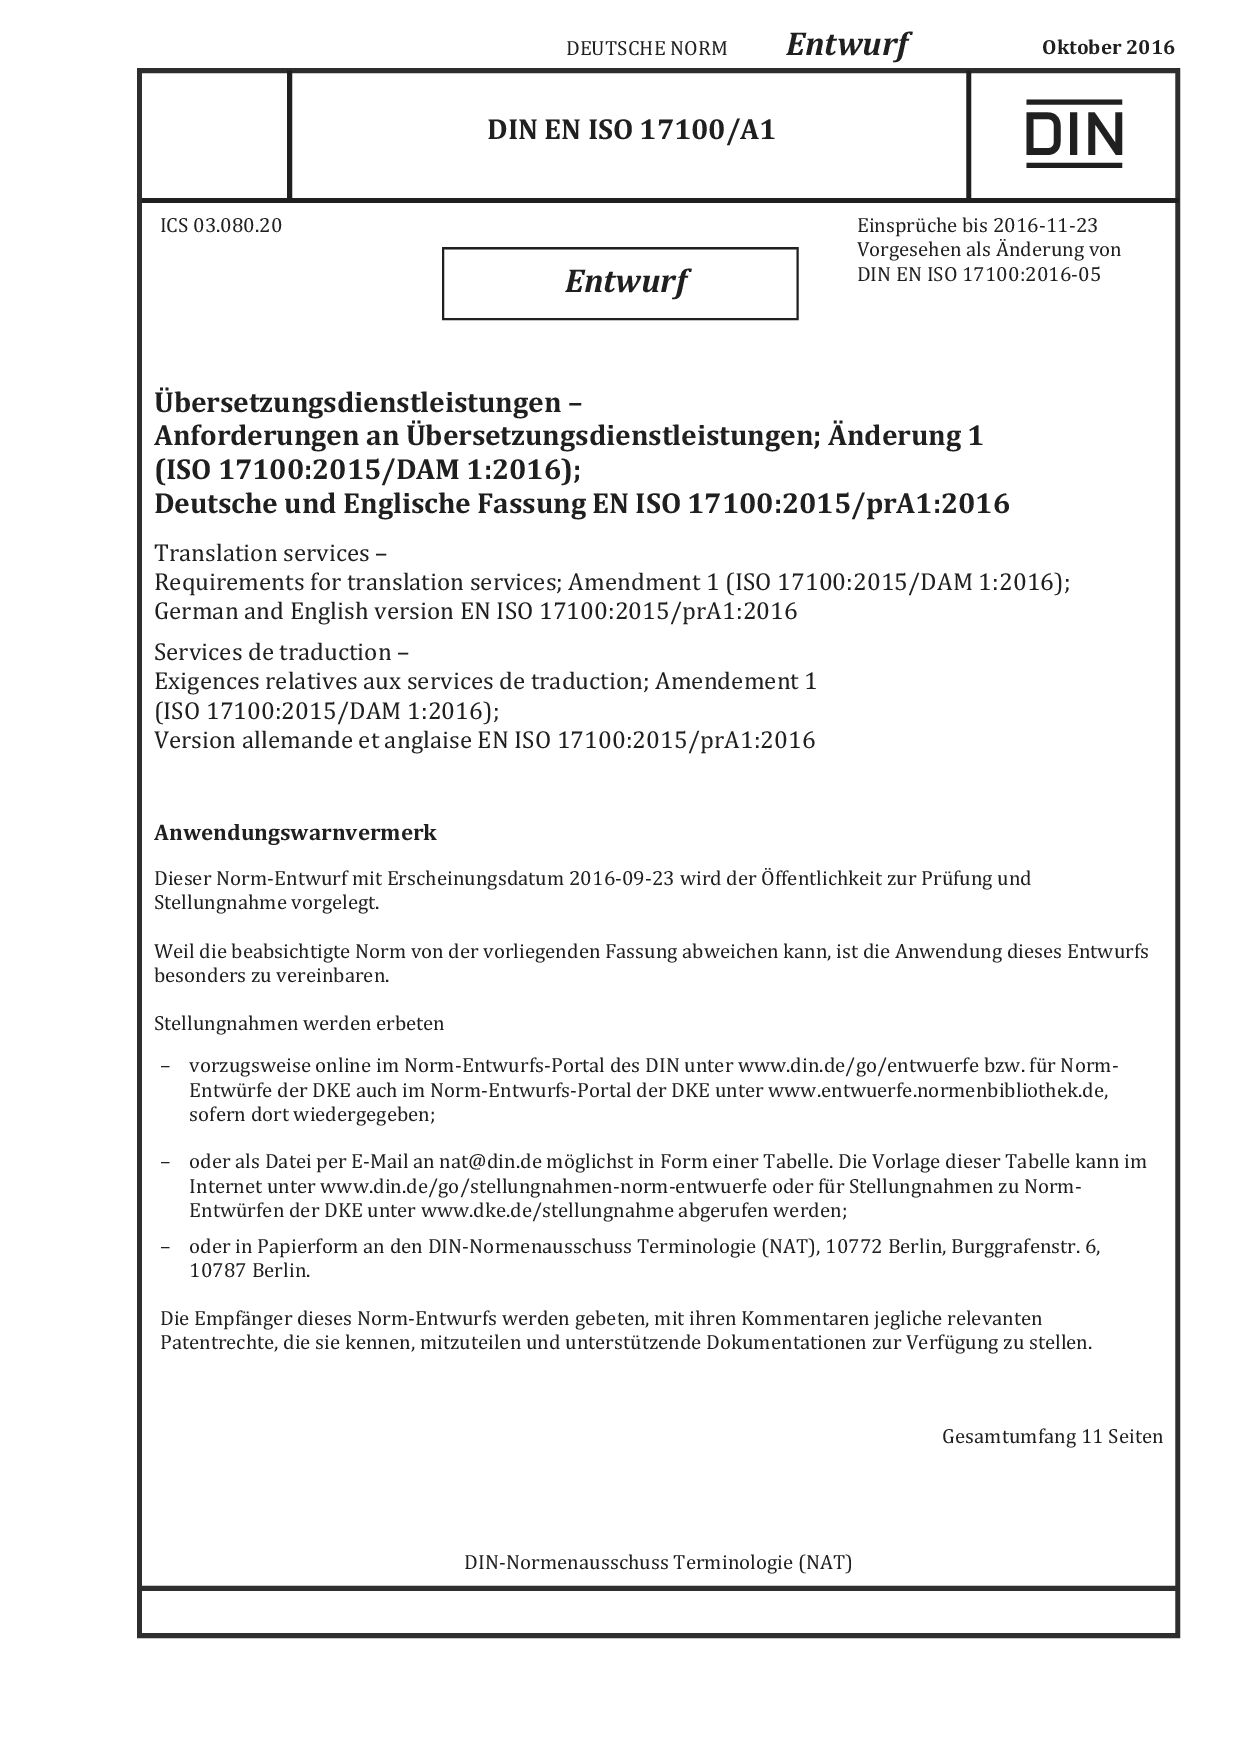 DIN EN ISO 17100 A1 E:2016-10